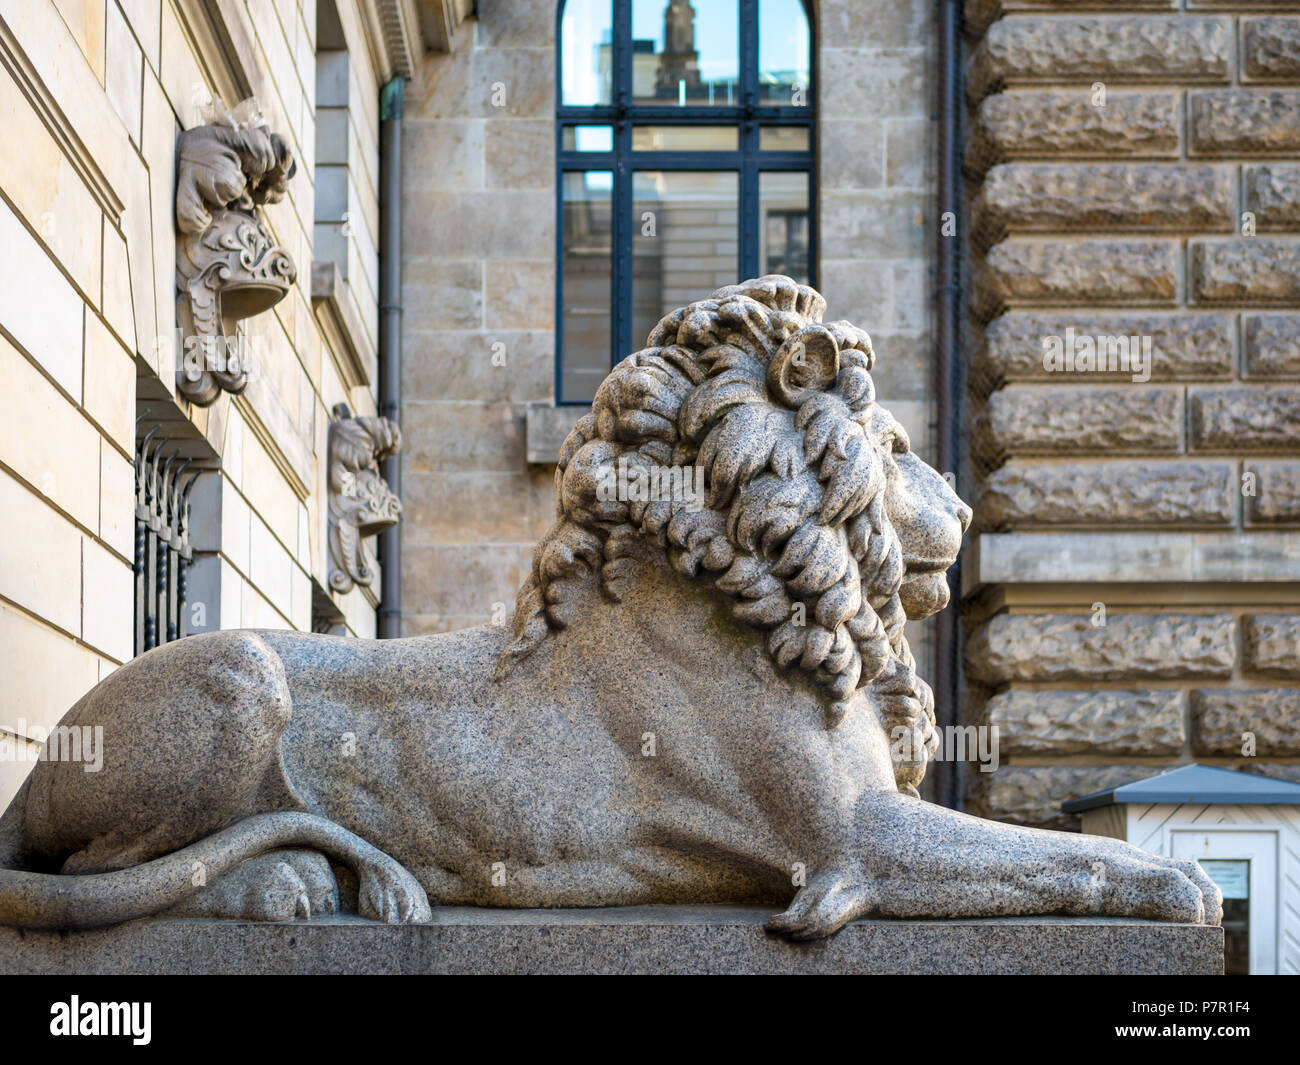 Hambourg, Allemagne - Juillet 03, 2018 : Avis au Lion sculpture à l'entrée de la cour intérieure à l'hôtel de Hambourg. Banque D'Images